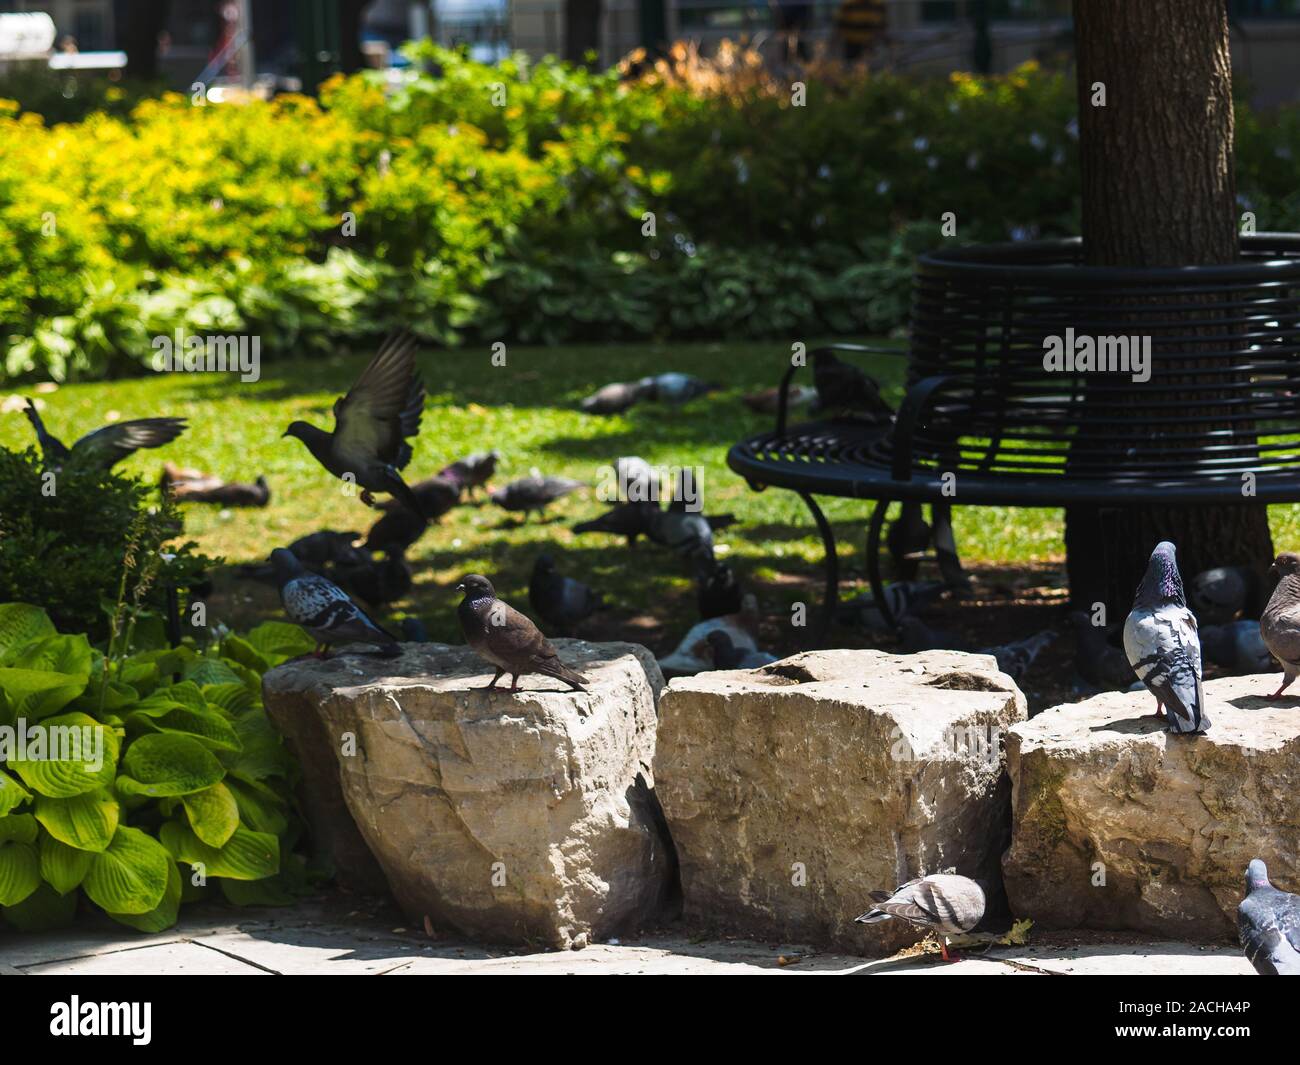 Viele Tauben sitzen in einem Park auf den Felsen, während eine Taube im Hintergrund flieht. Stockfoto